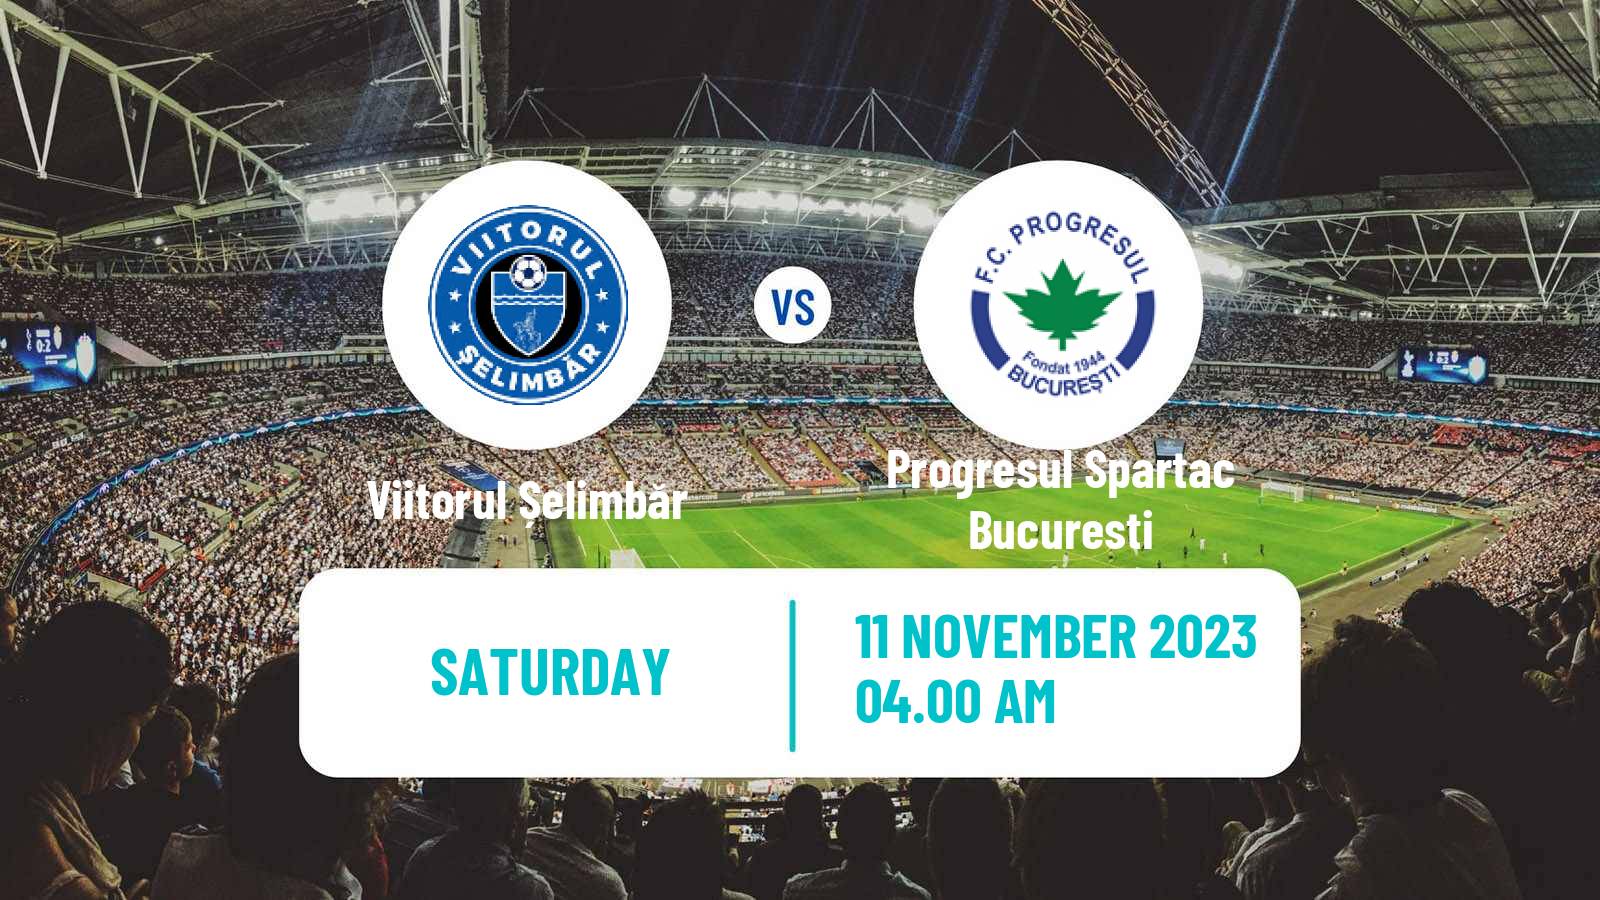 Soccer Romanian Division 2 Viitorul Șelimbăr - Progresul Spartac Bucuresti